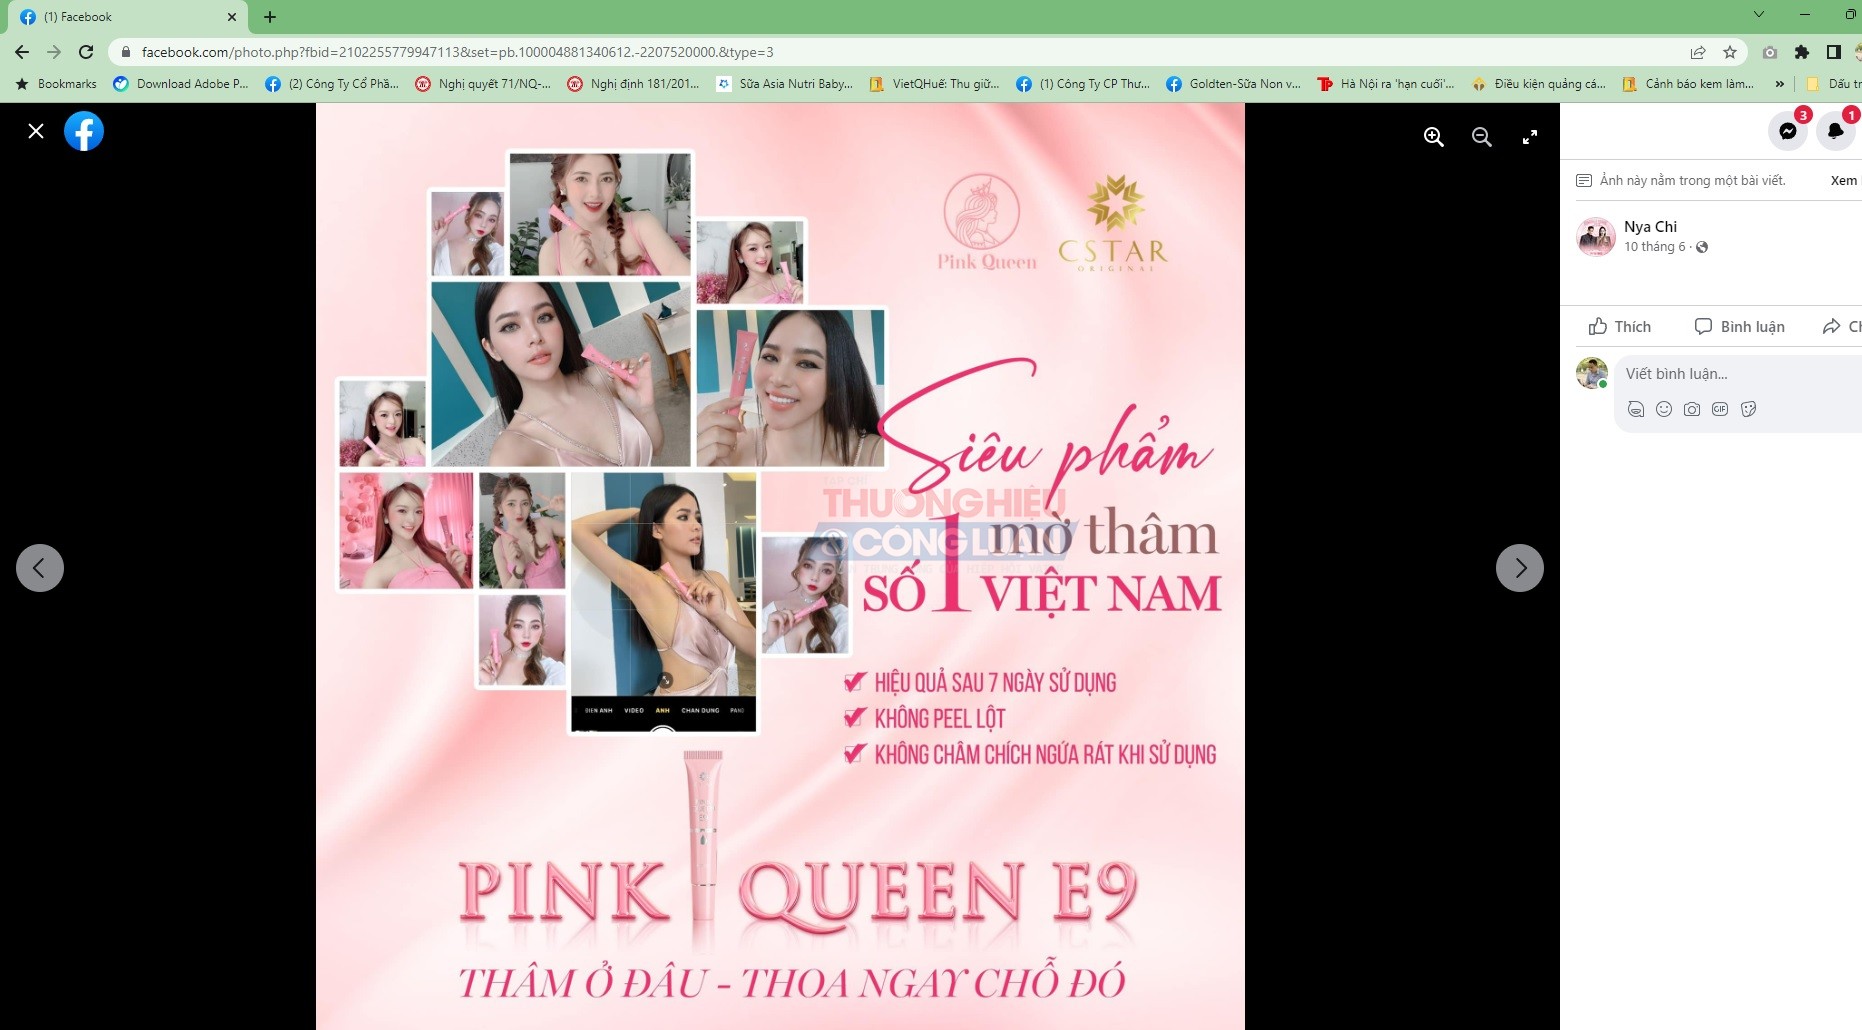 Ai chứng nhận cho sản phẩm Pink Queen E9 là sản phẩm mờ thâm số 1 Việt Nam?